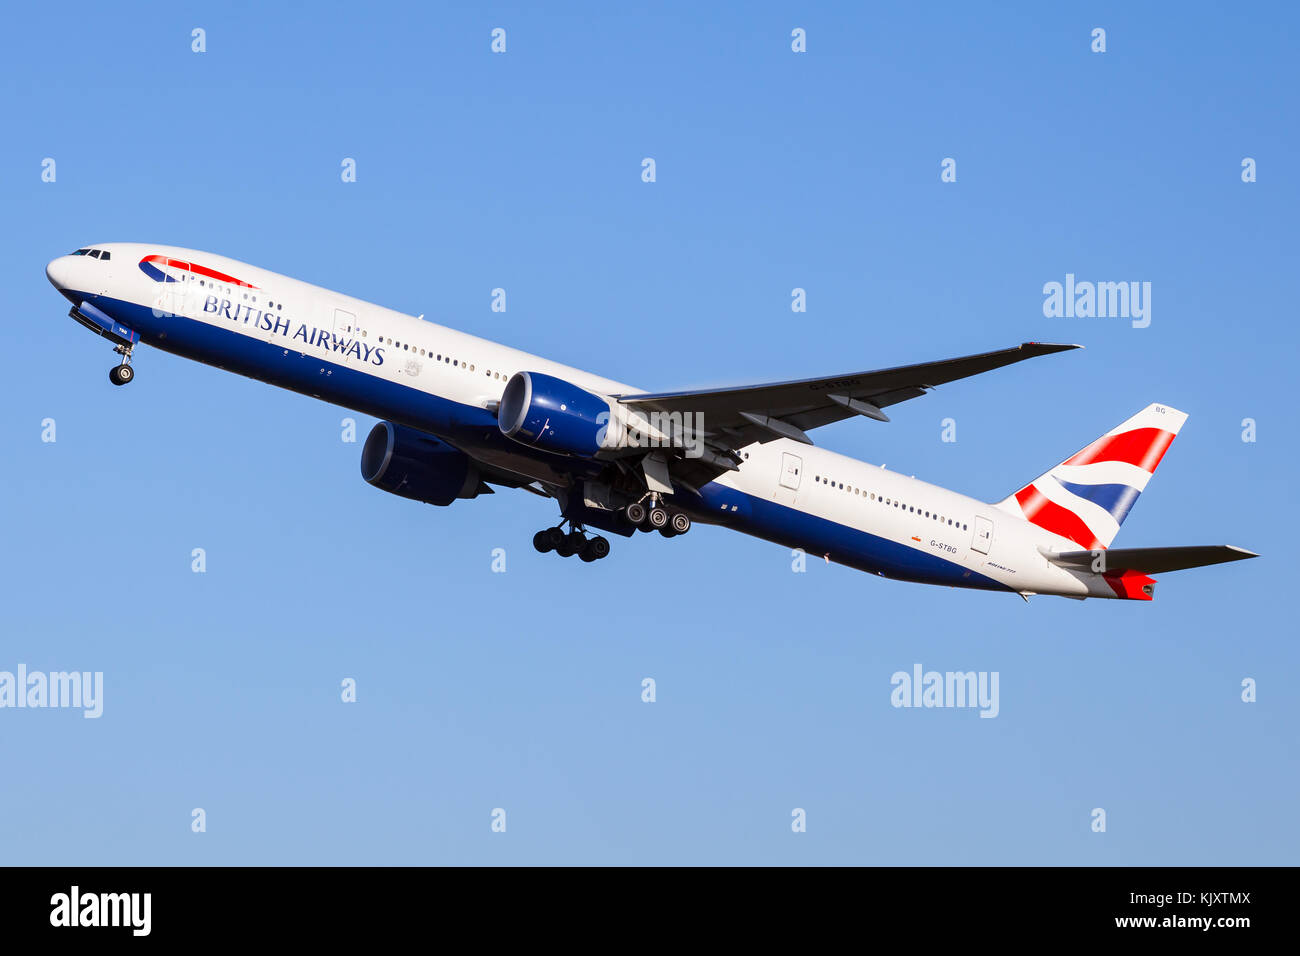 Eine Boeing 777 der Großraumflugzeuge Verkehrsflugzeuge von British Airways, Registrierung G-STBG, Abfahrt des Flughafens Heathrow runway 27L. Stockfoto